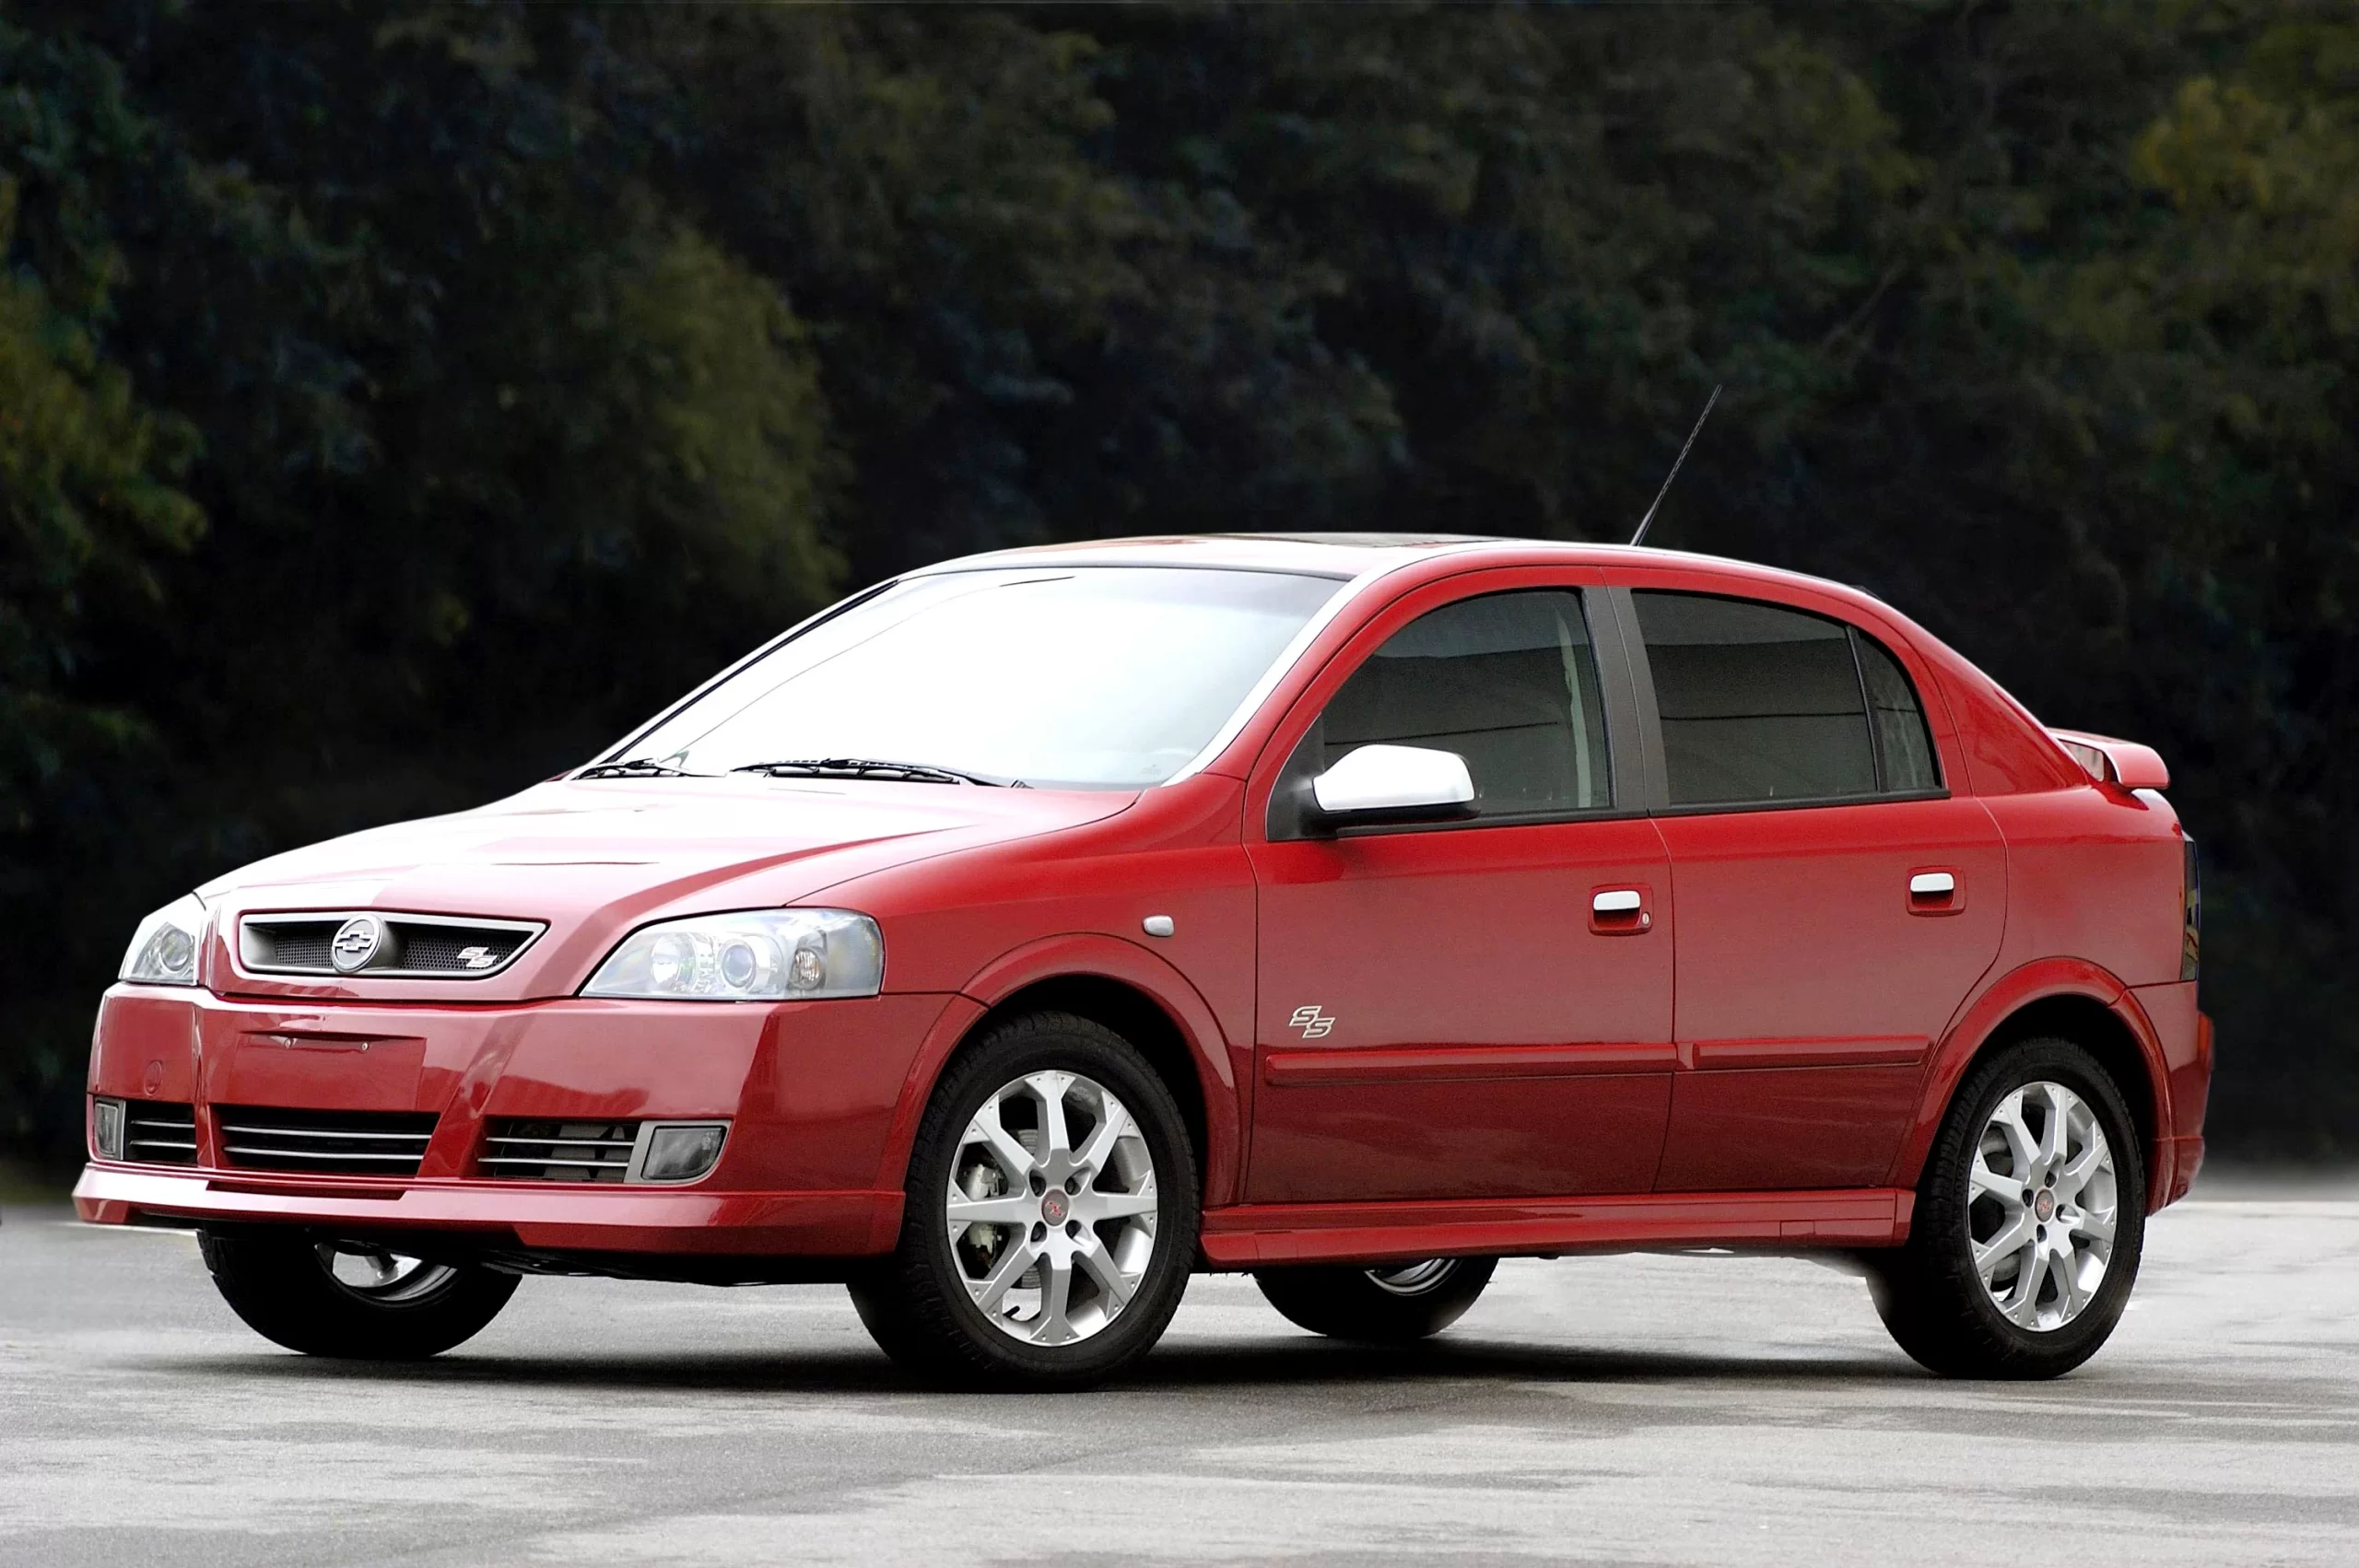 Fast ou #Fake: o Chevrolet Astra SS até empolgava | Webmotors